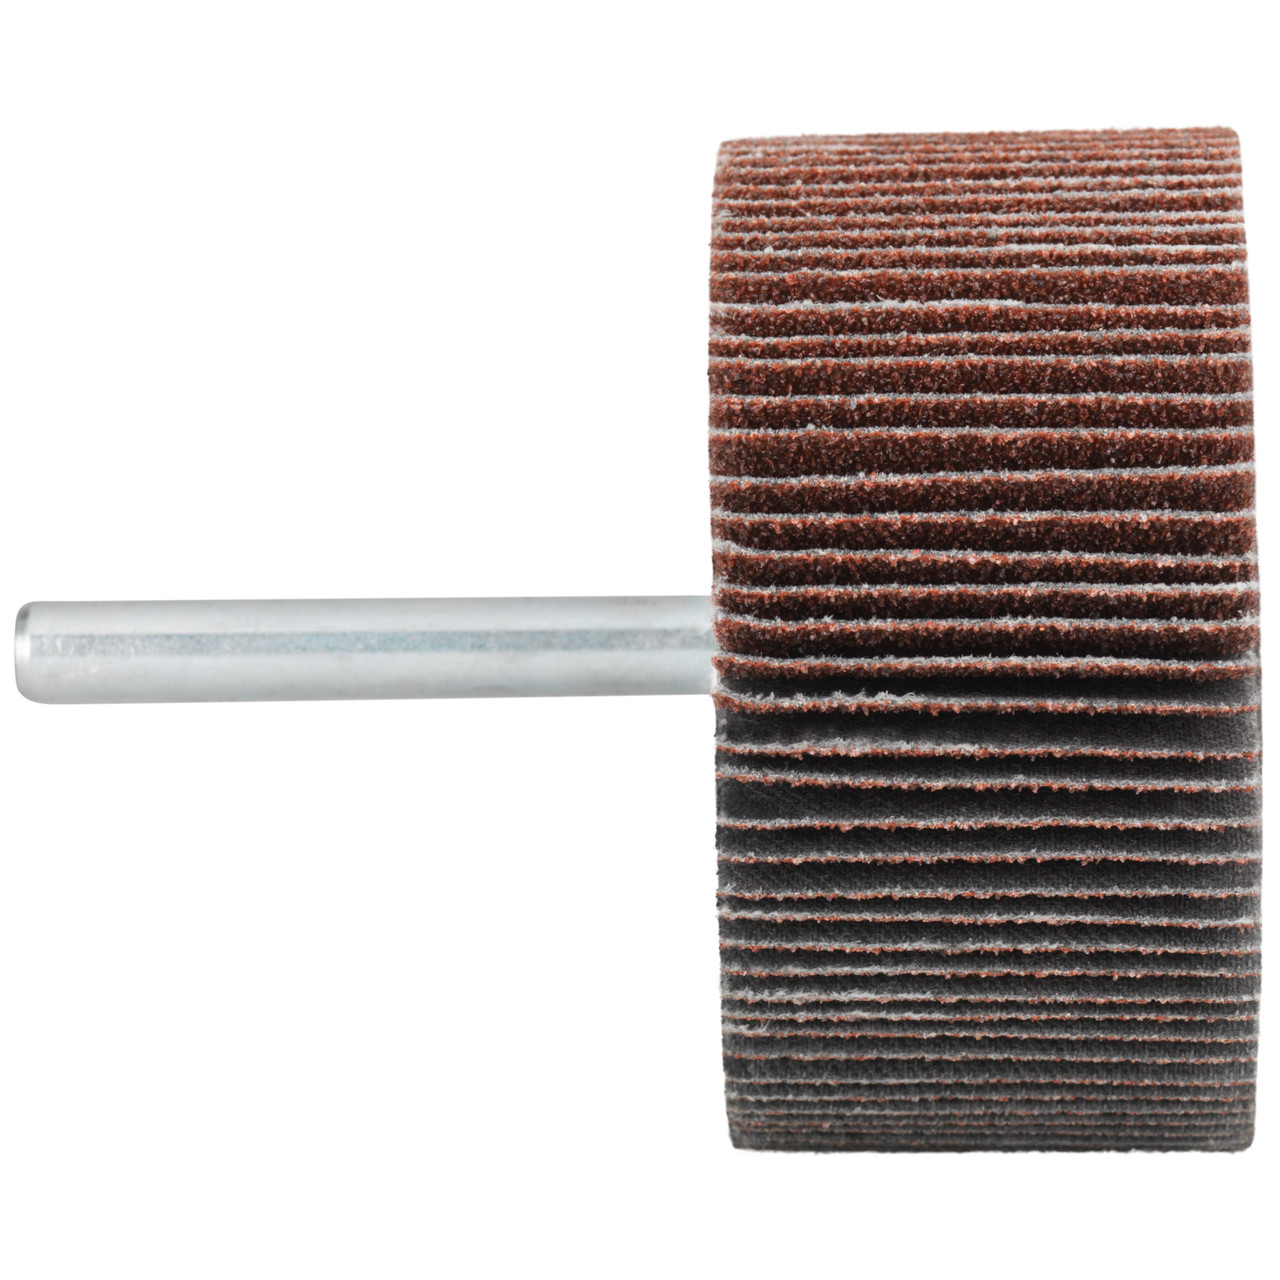 Tyrolit A-P01 C X Pennen DxD 80x30 Voor staal, roestvast staal en non-ferrometalen, P320, vorm: 52LA, Art. 910720